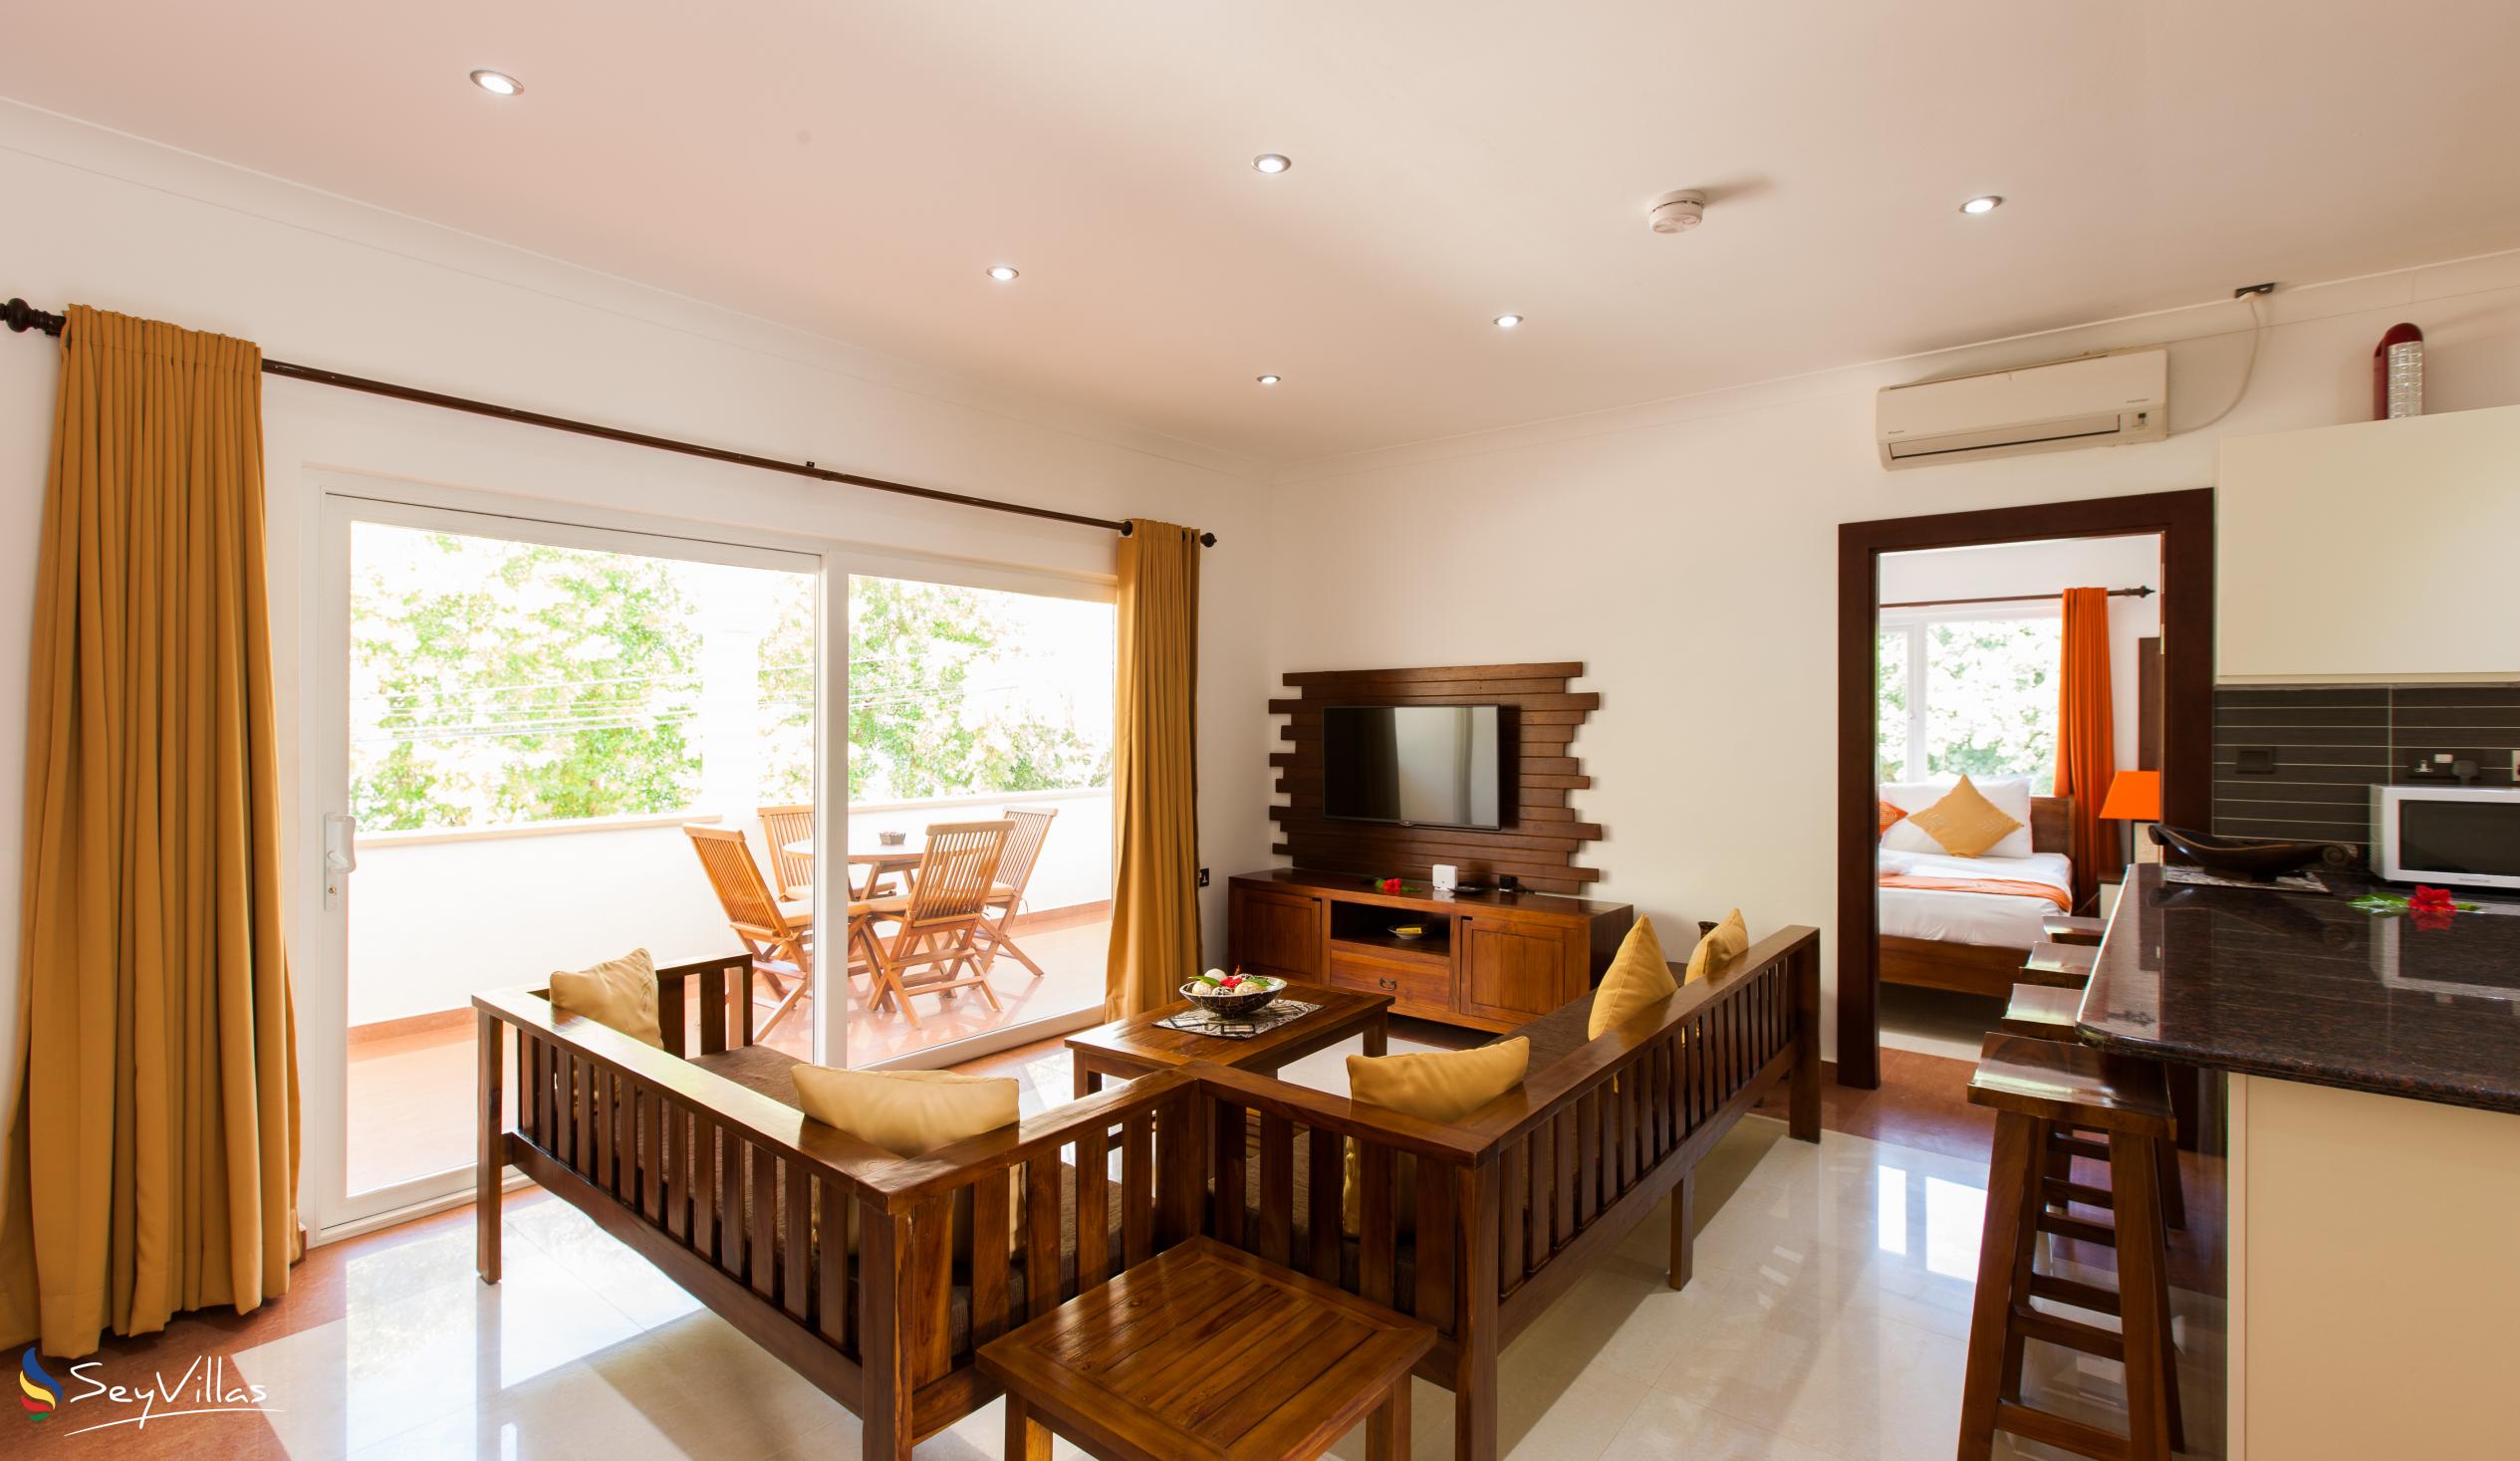 Foto 12: YASAD Luxury Beach Residence - Appartement mit 3 Schlafzimmern - Praslin (Seychellen)